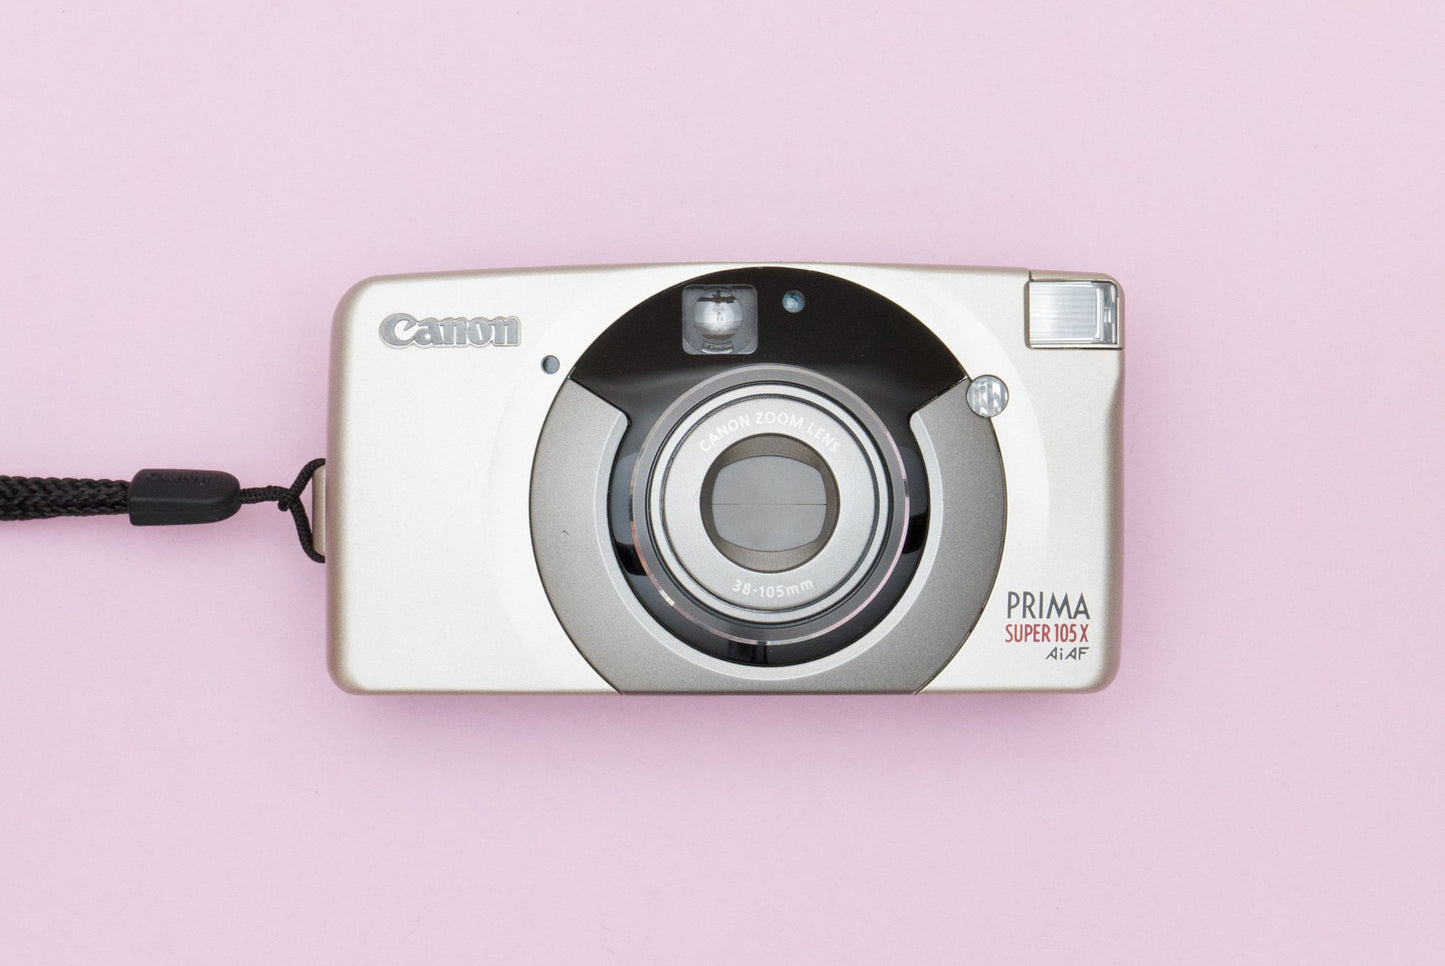 Canon Prima SUPER 105X Ai AF Compact 35mm Film Camera